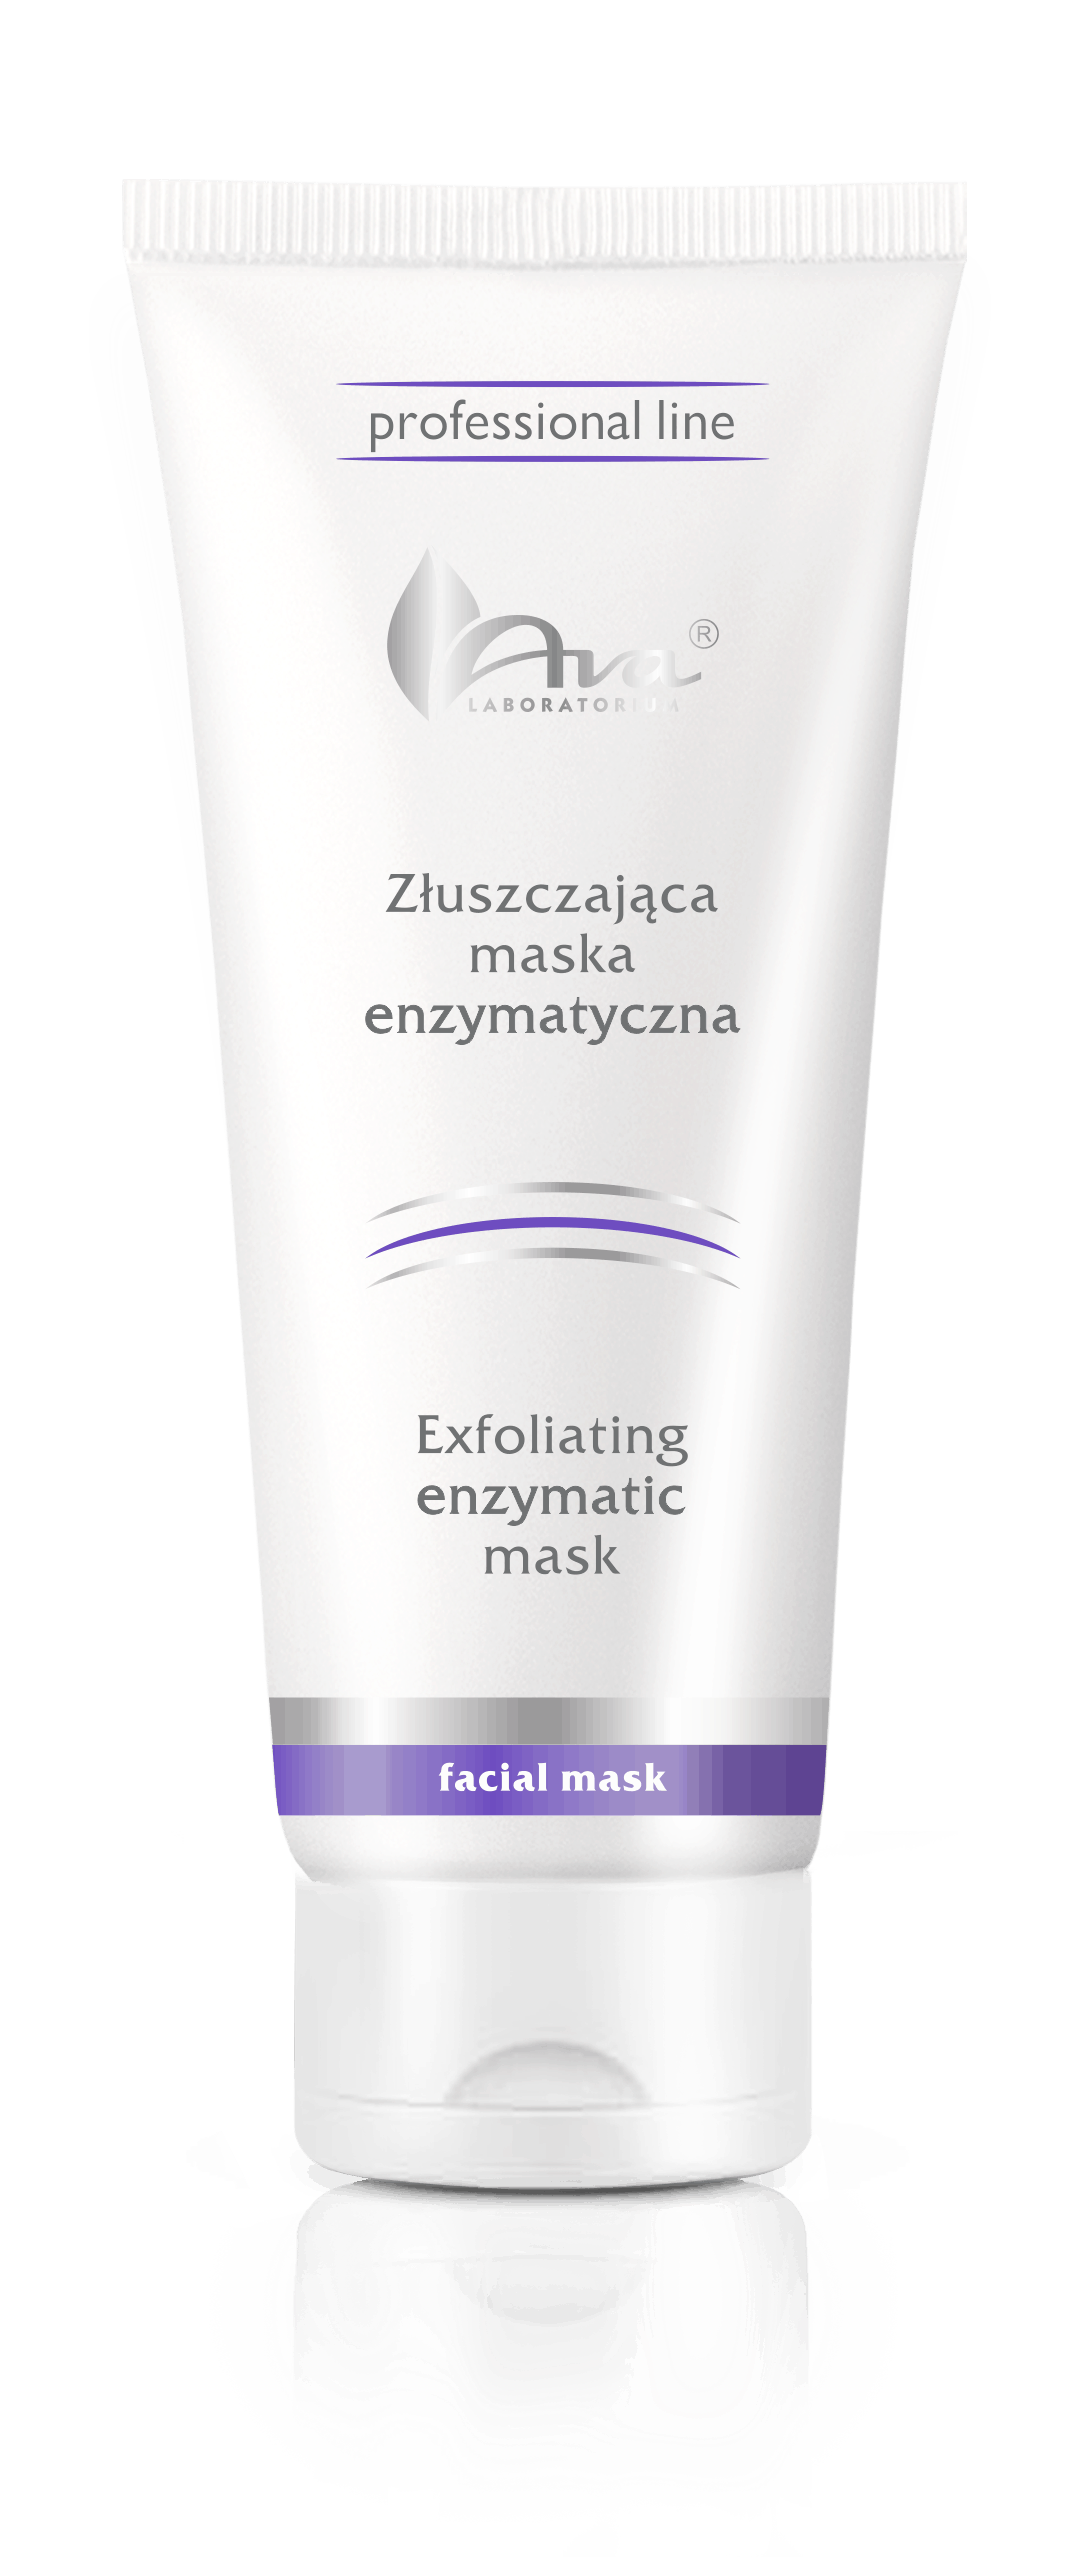 Exfoliating enzyme mask